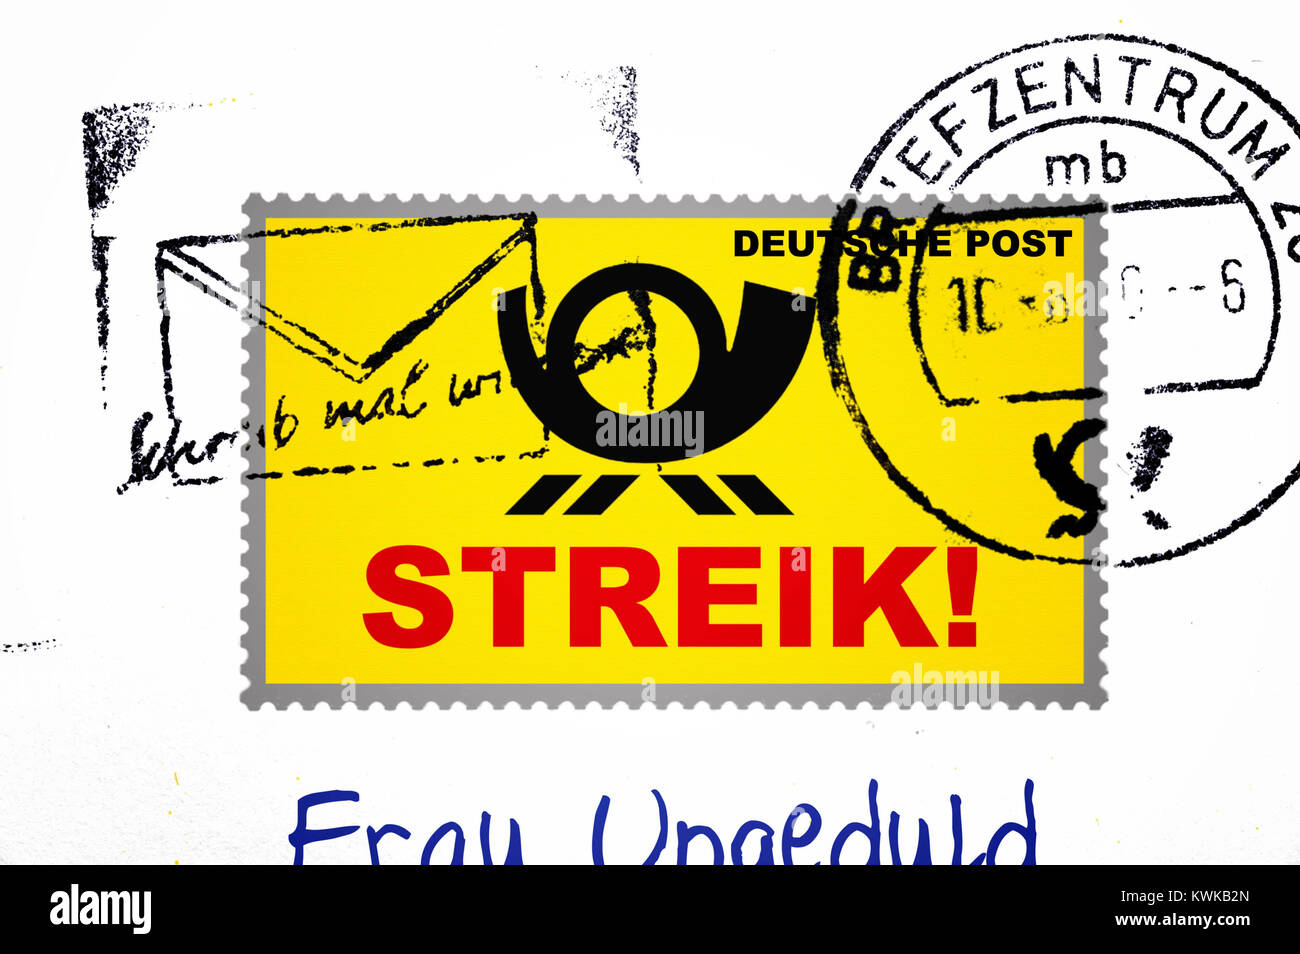 Mit Streik Schlaganfall Stempel, symbolische Foto Poststreik, Briefmarke mit Streik-Schriftzug, Symbolfoto Post-Streik Stockfoto